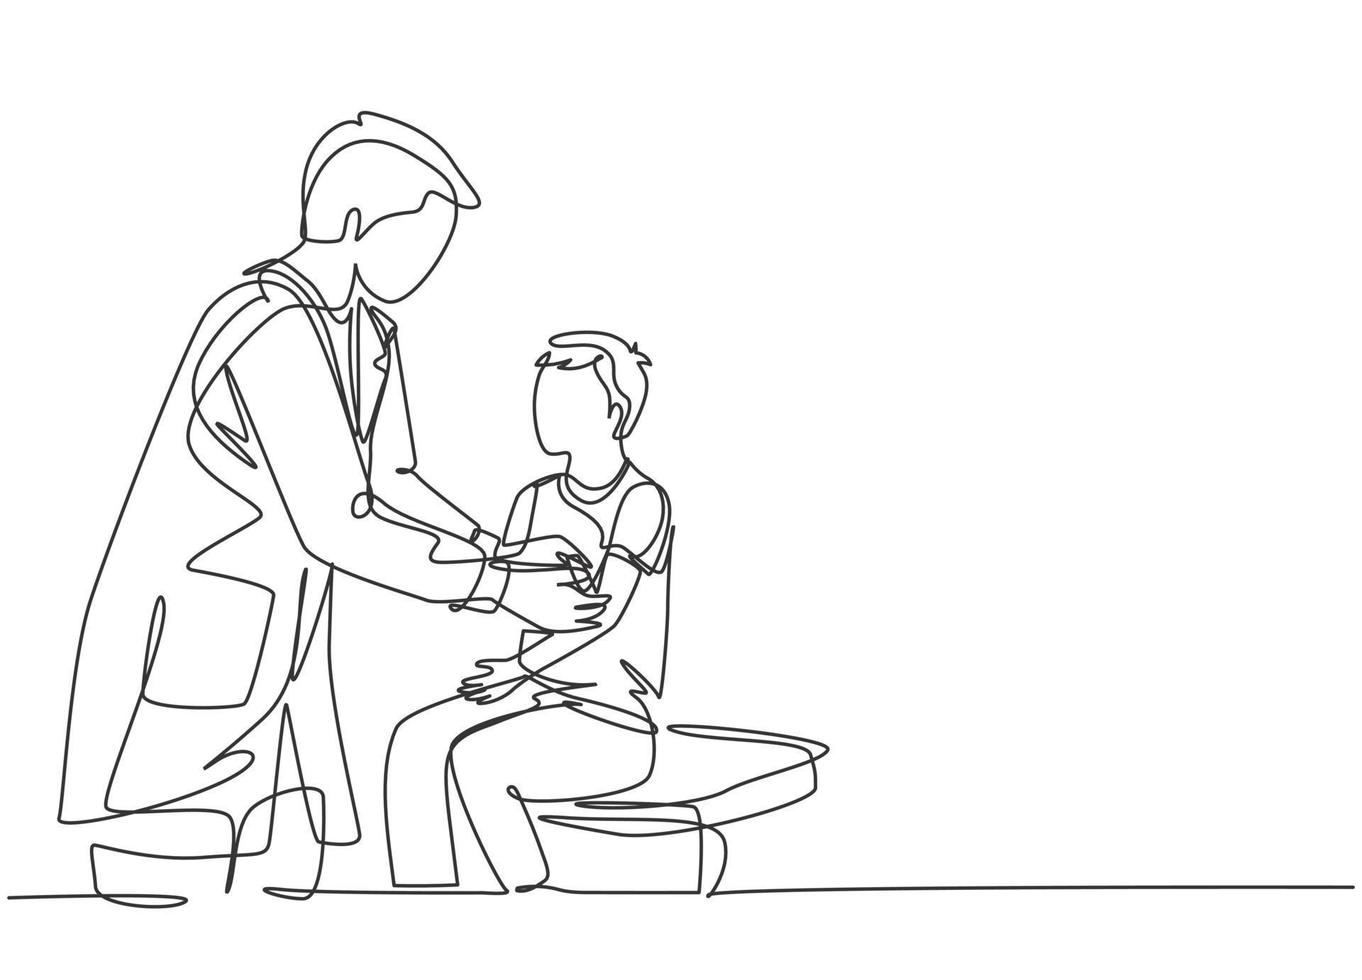 en enda linjeteckning av manlig läkare som ger medicinsk behandling genom att fästa ett bandage till skadad liten pojkepatient. medicinsk behandling koncept kontinuerlig linje rita design vektor illustration